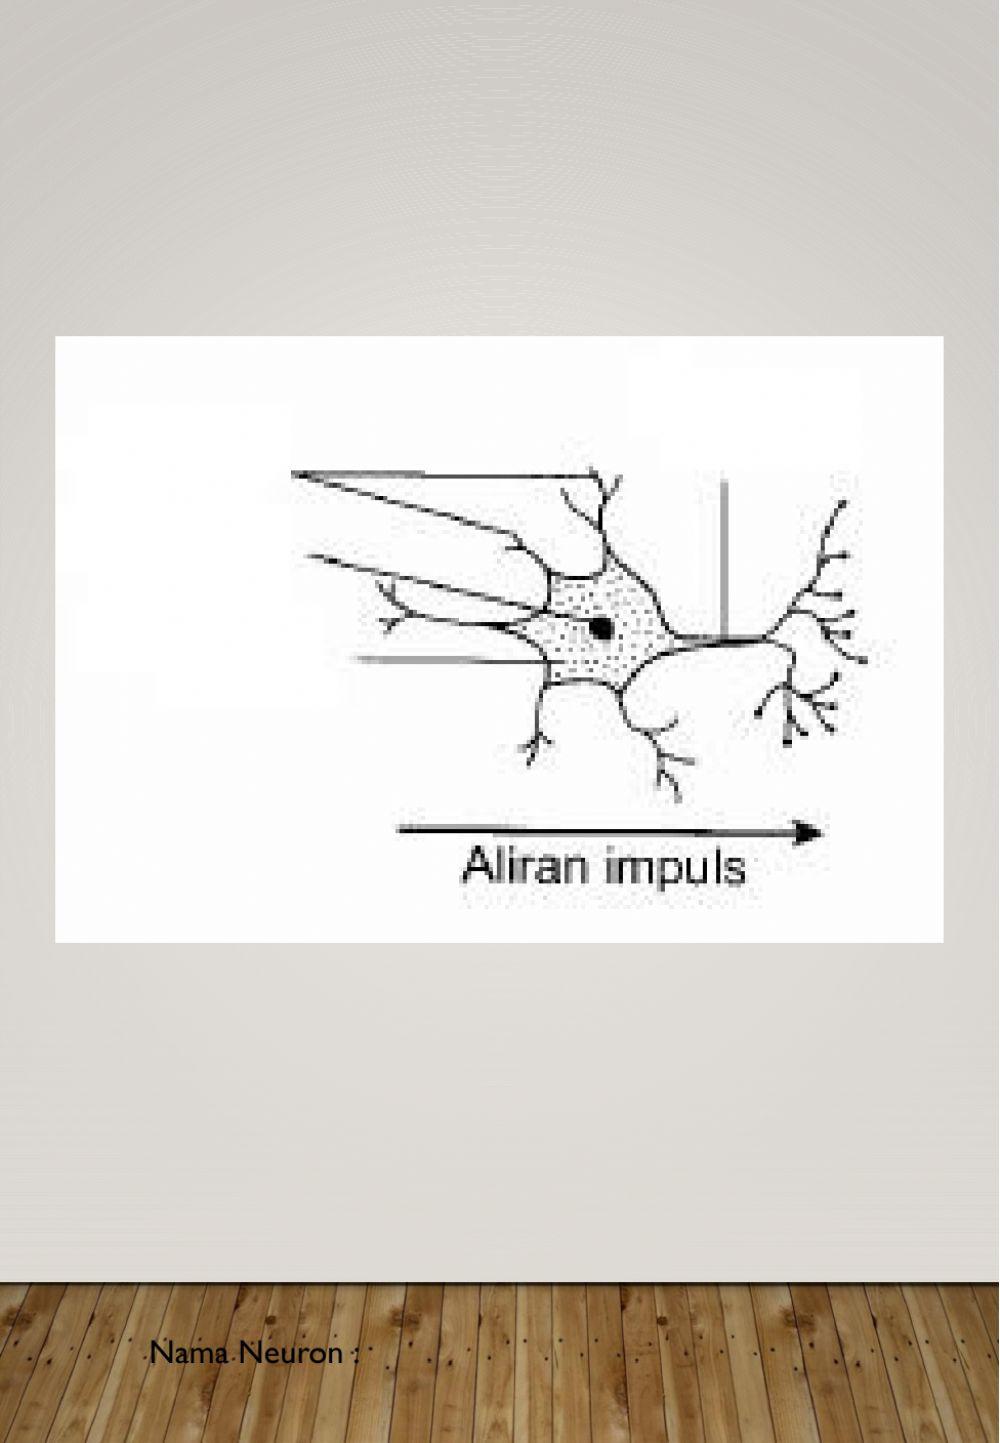 3 Jenis Neuron